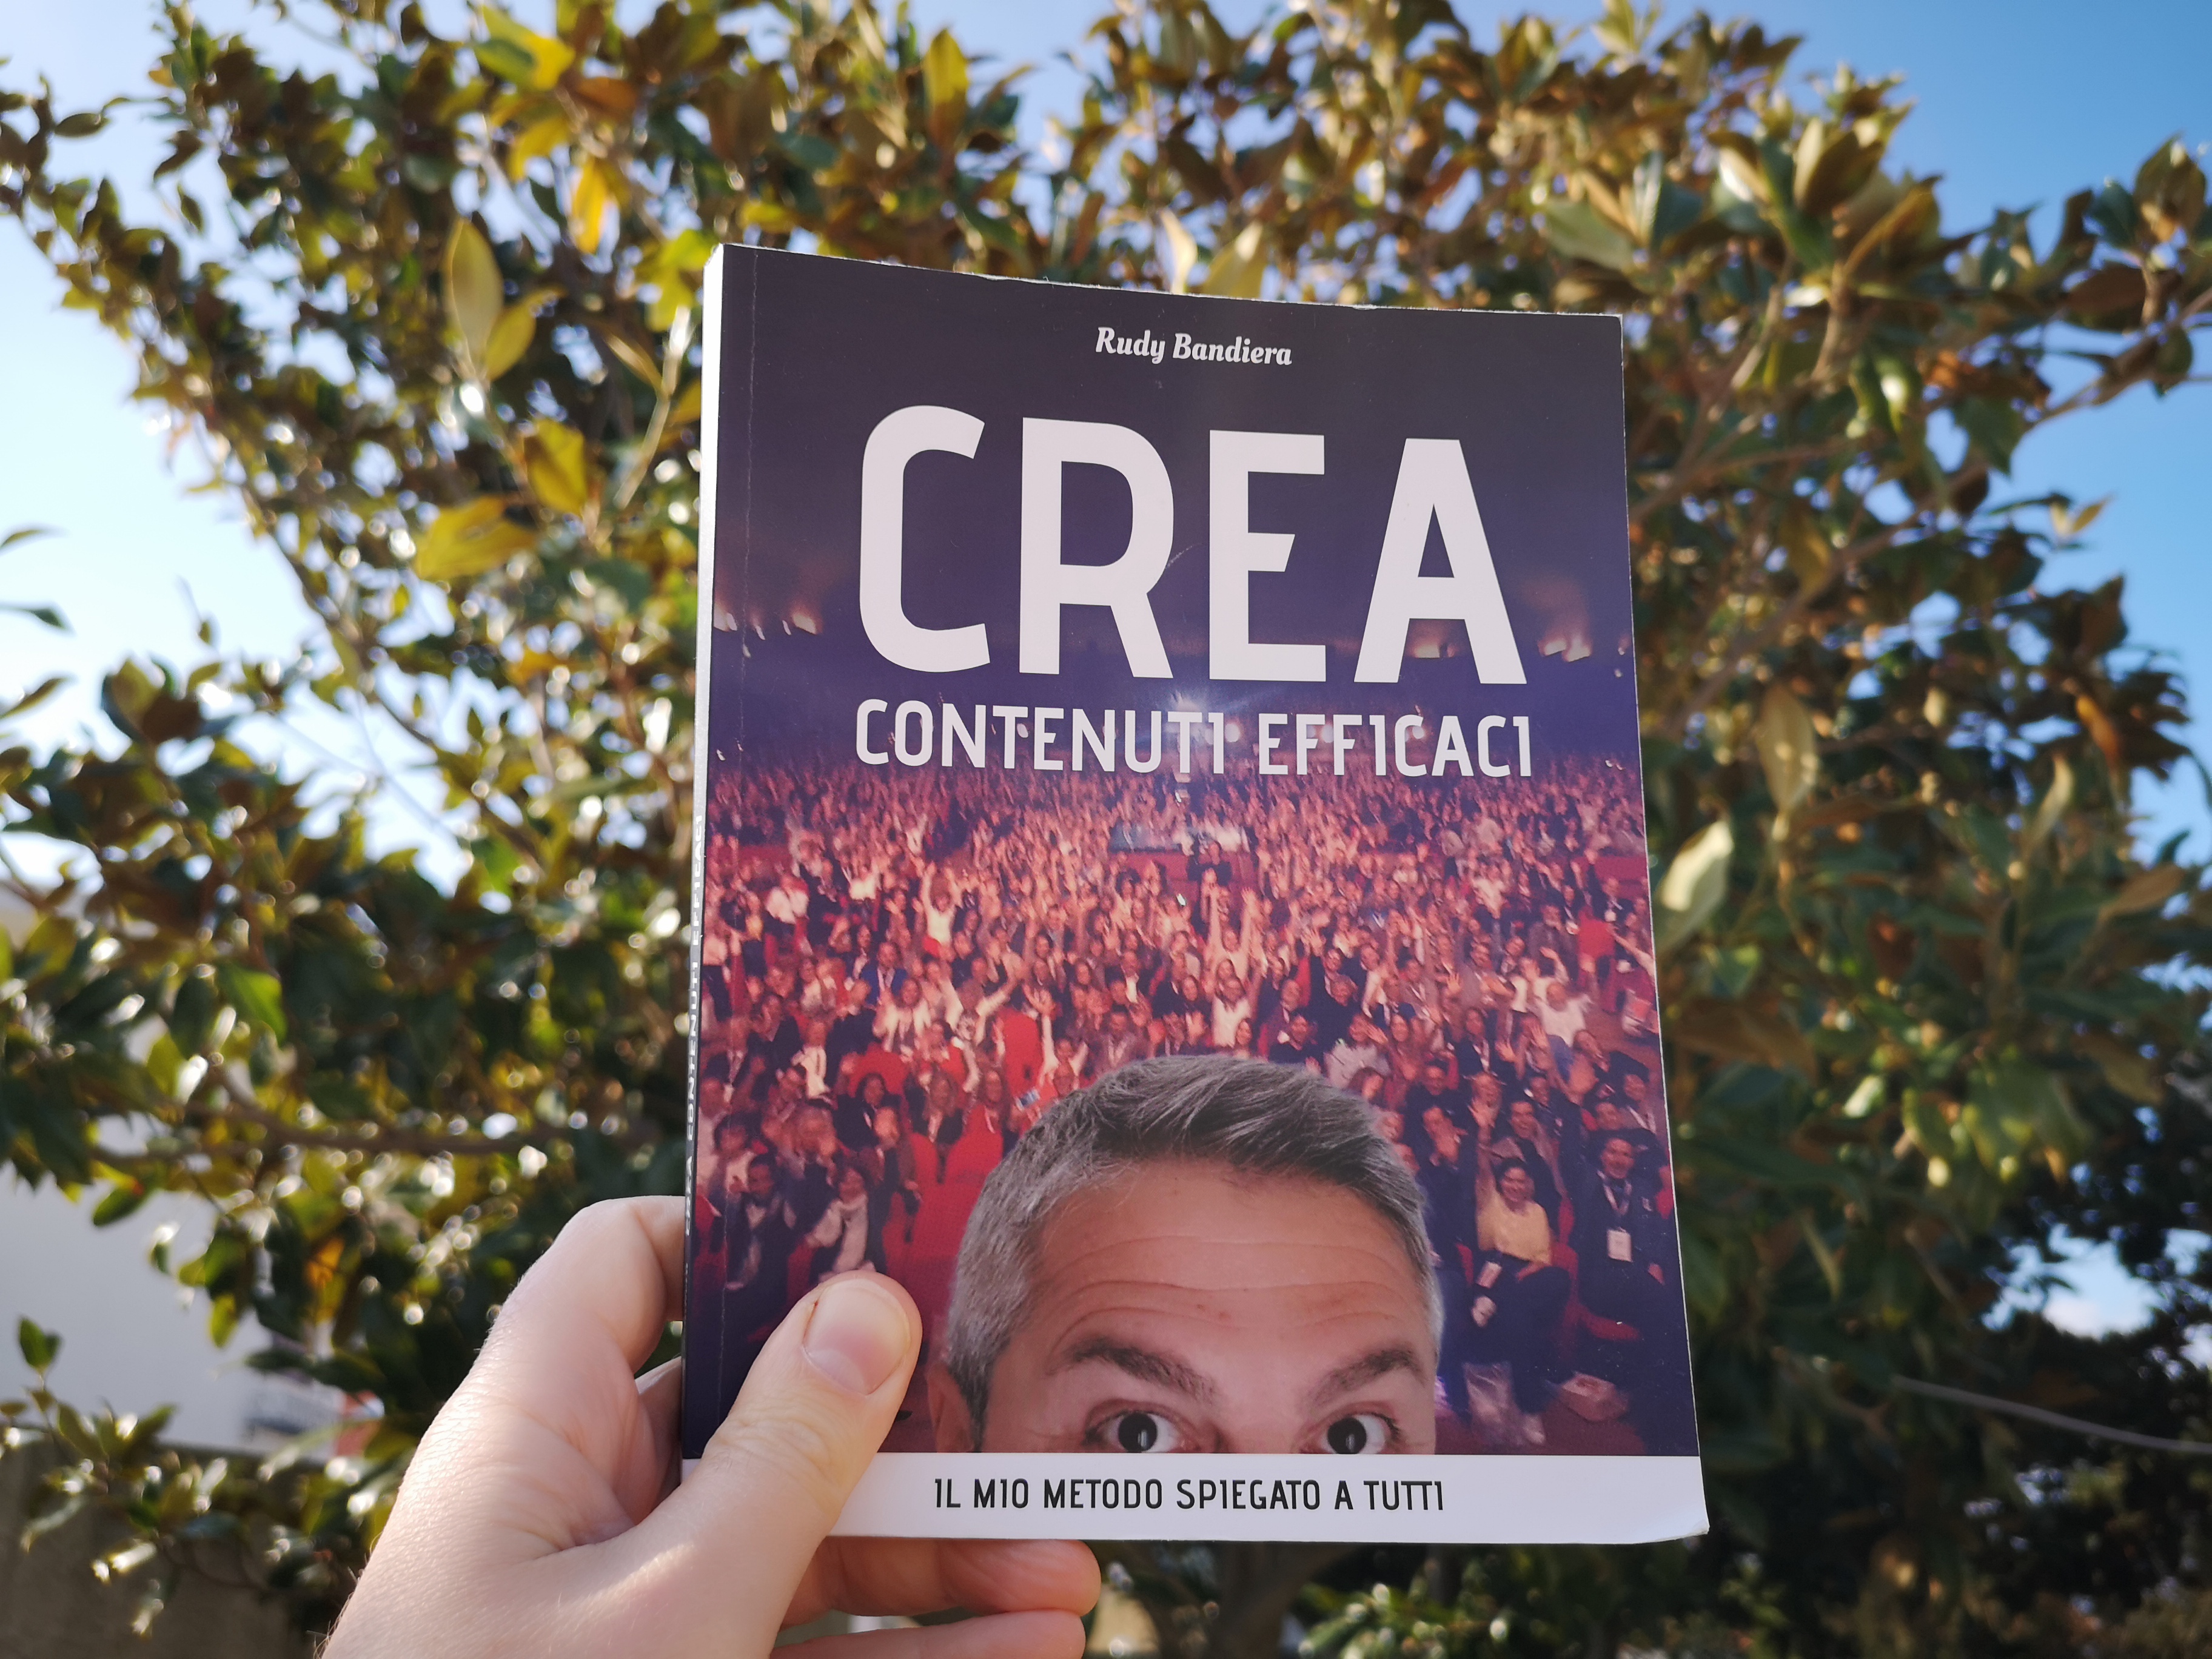 copertina di “Crea contenuti efficaci” di Rudy Bandiera